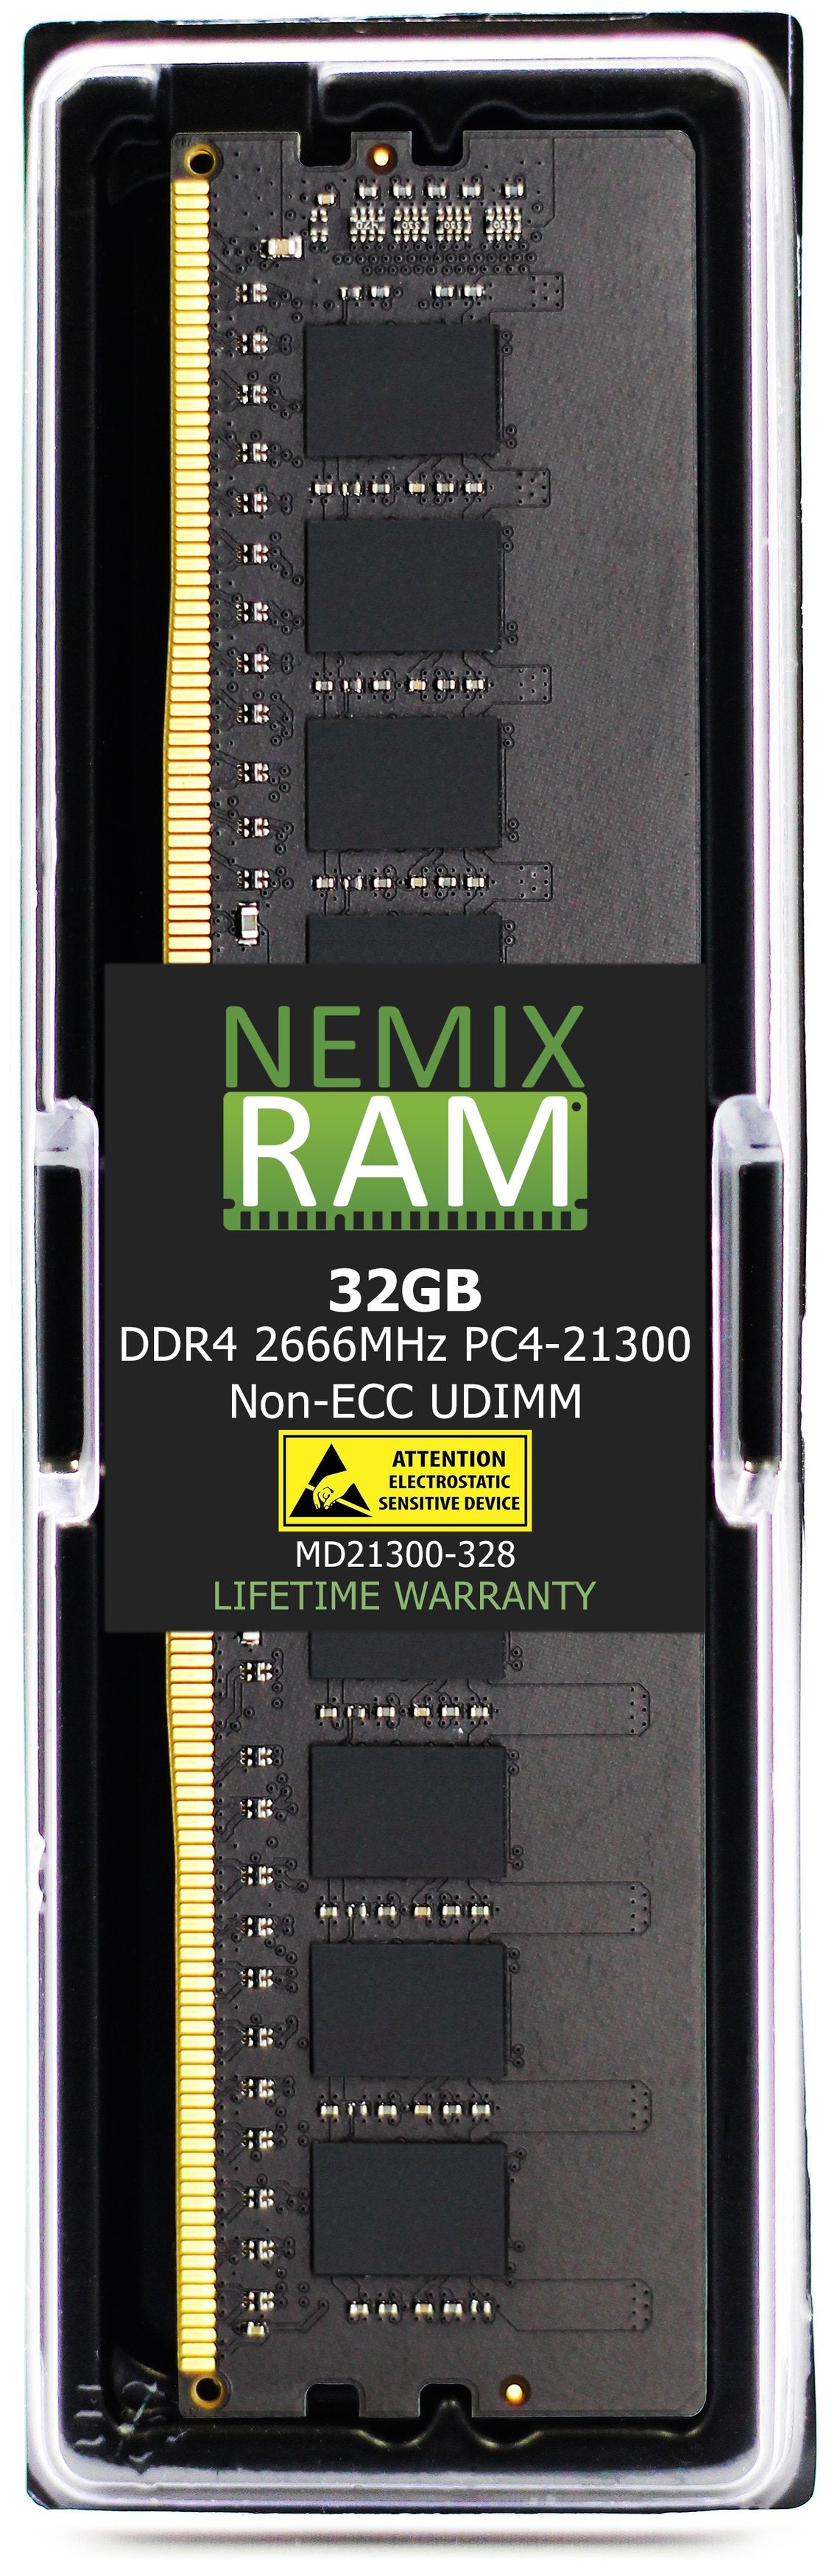 Hynix HMAA4GU6AJR8N-VK 32GB DDR4 2666MHZ PC4-21300 UDIMM Compatible Memory Module